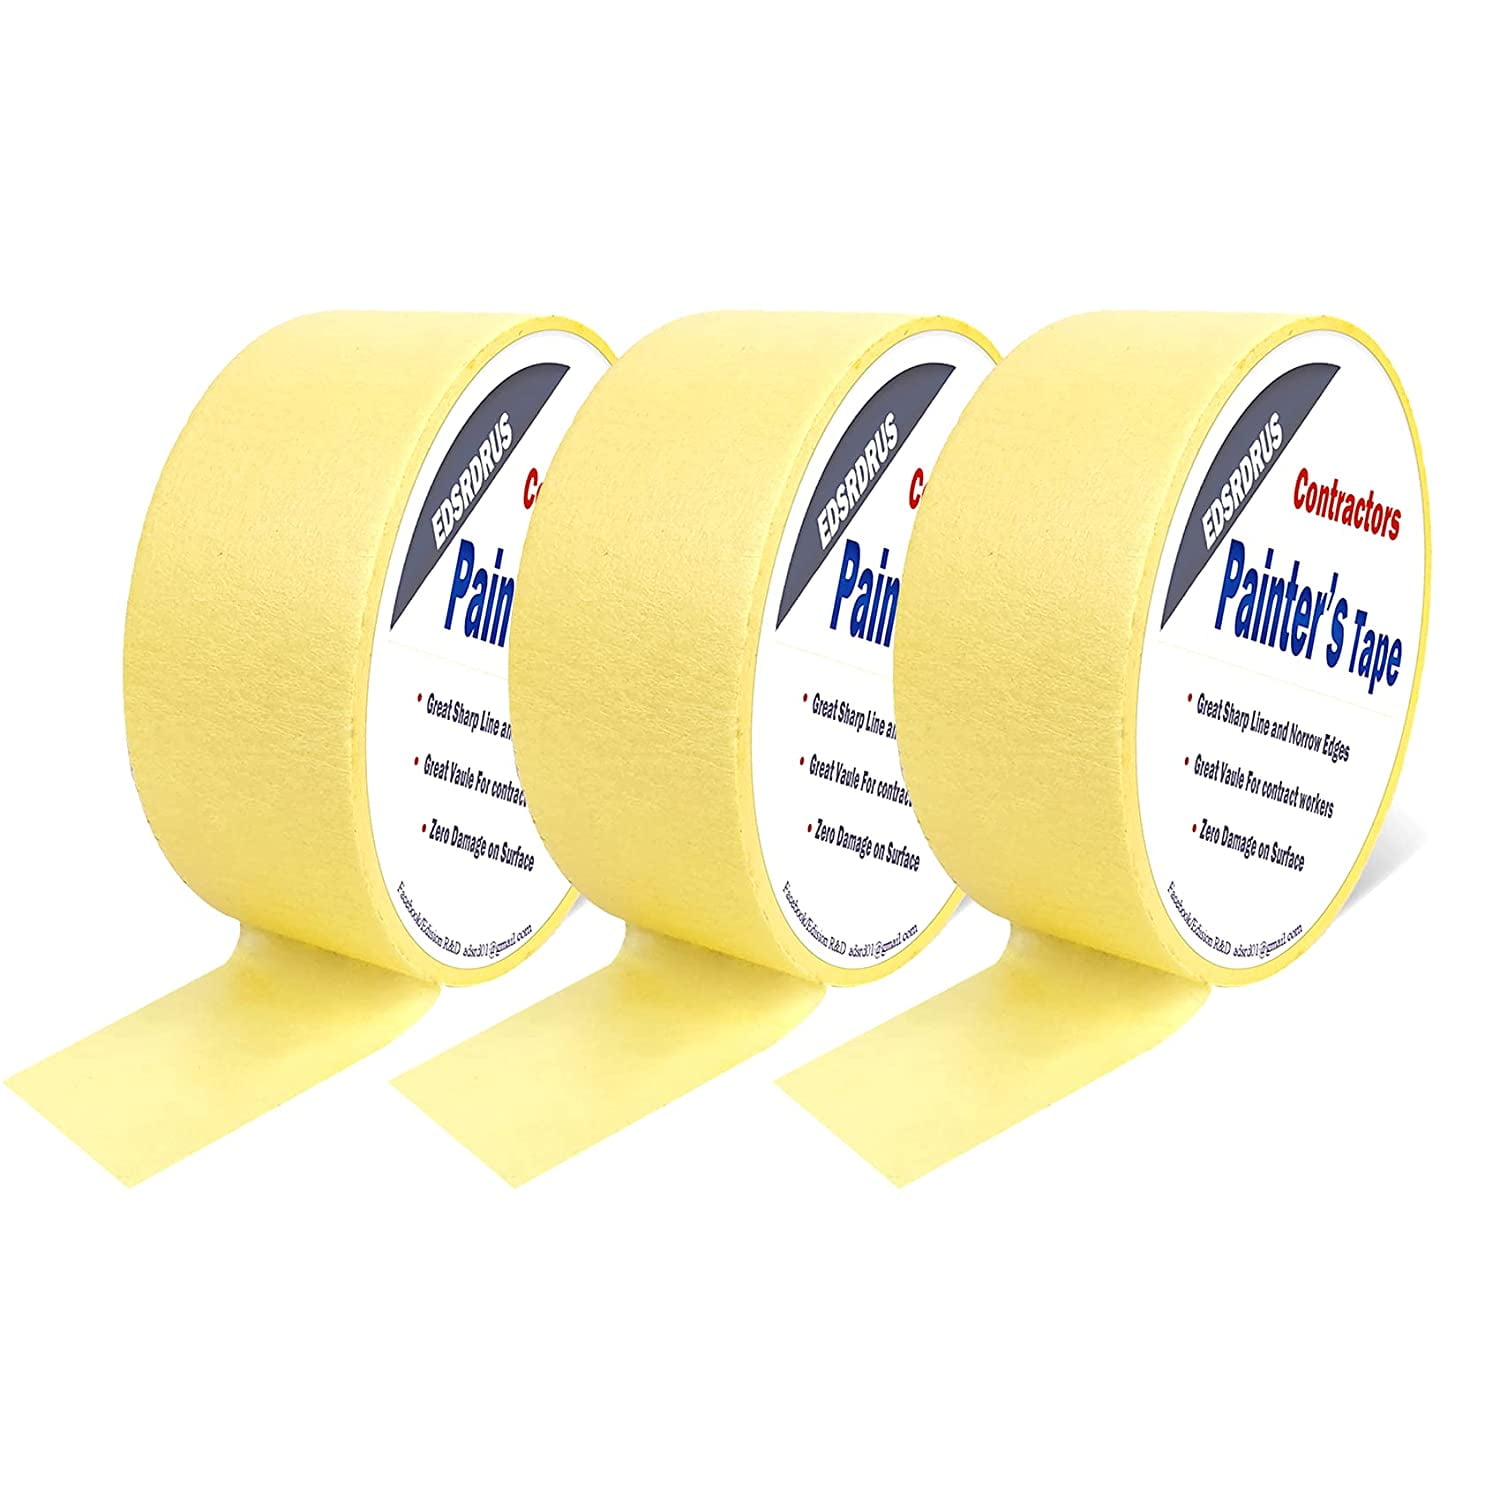  EDSRDRUS 3 Pack Ruler Tape 1/2, 1, 1-1/2 inch Masking